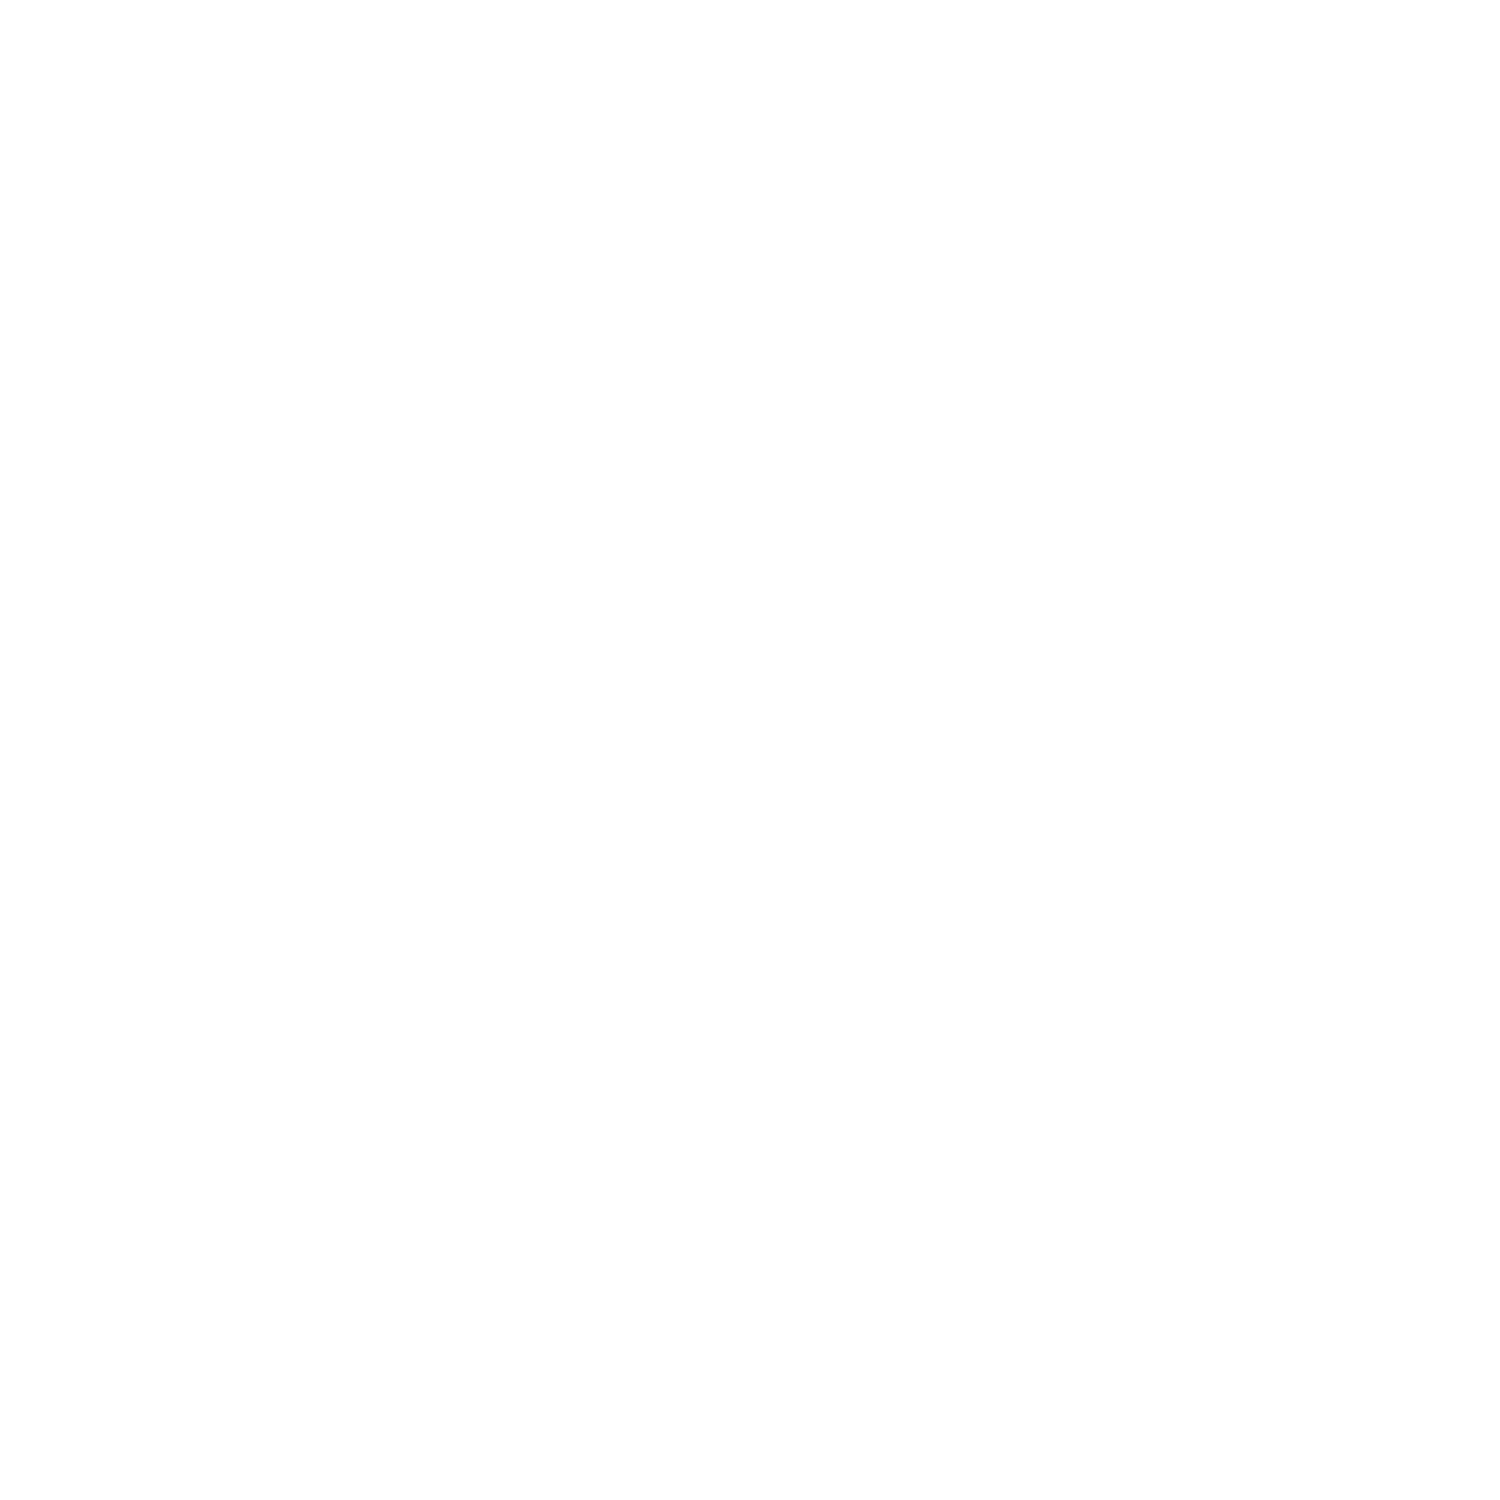 DAYTON VIEW HISTORIC DISTRICT